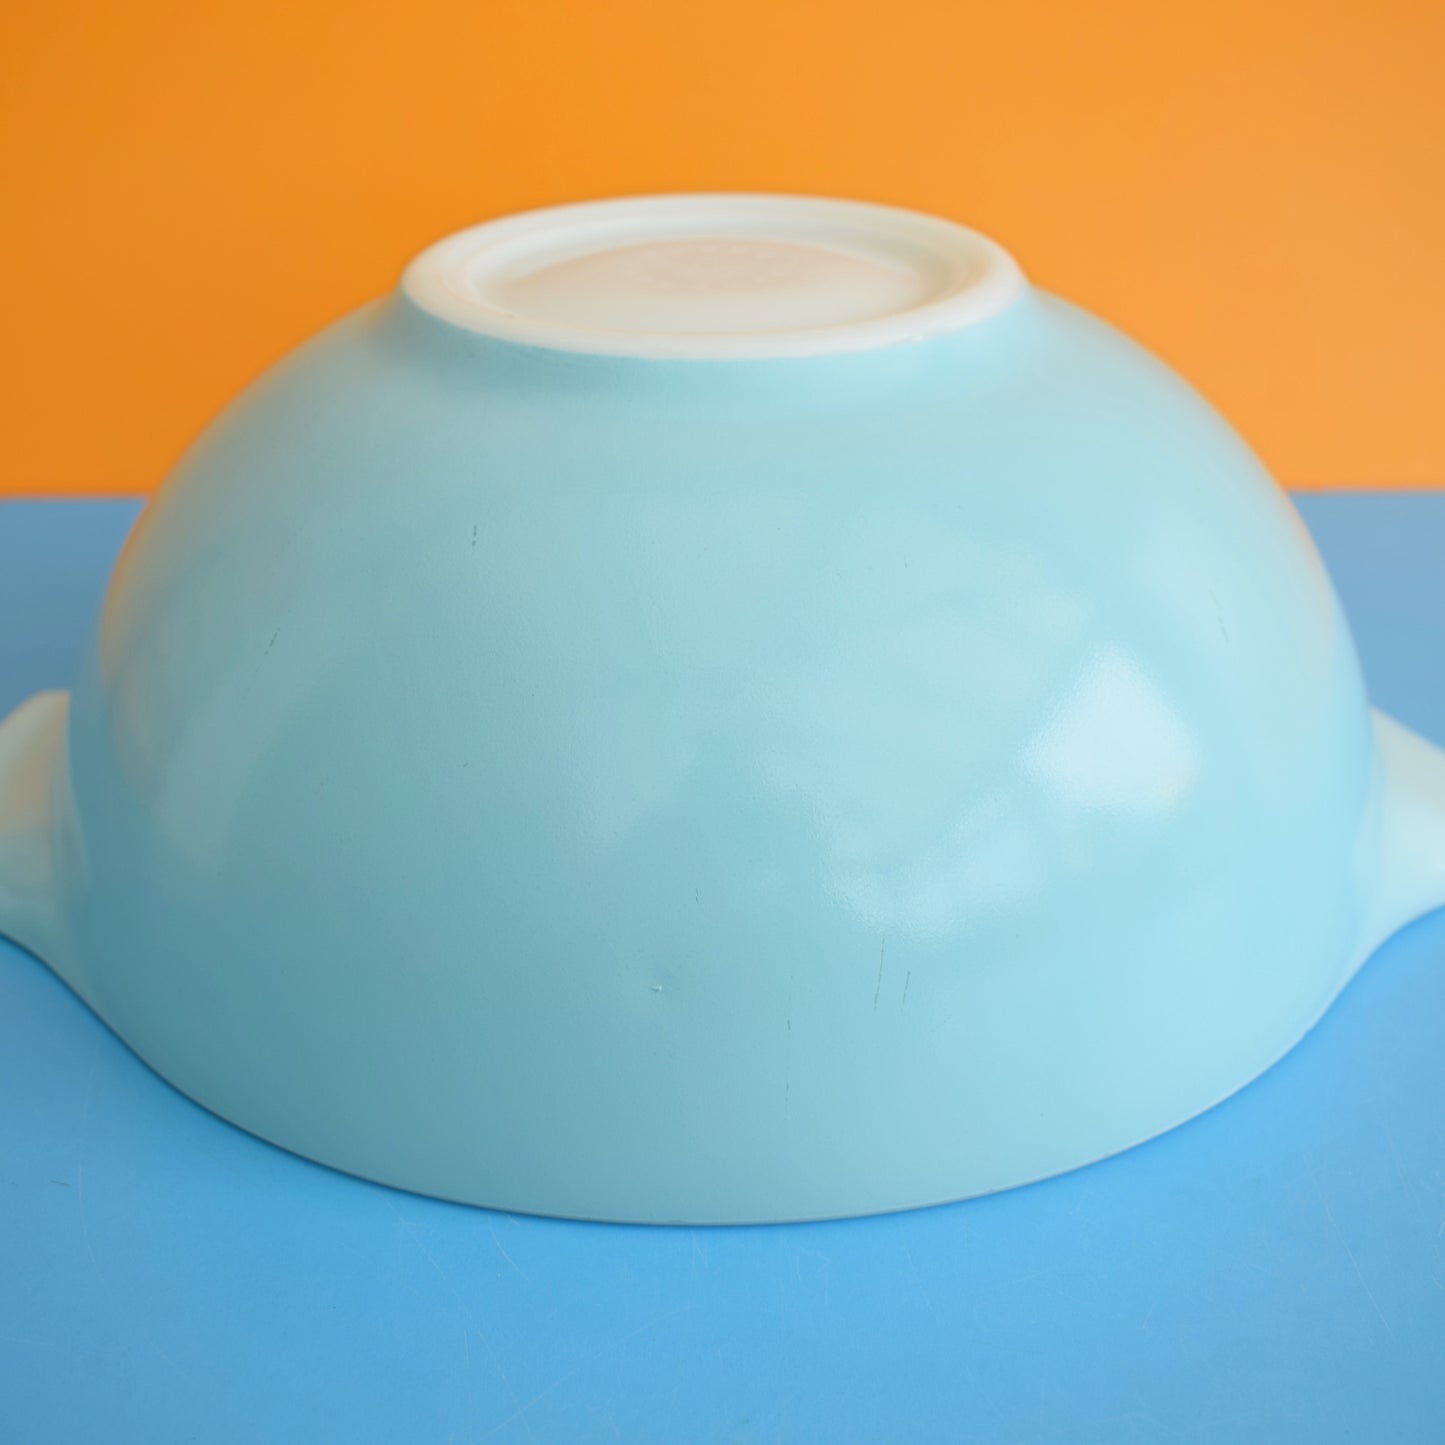 Vintage 1960s Pyrex Mixing Bowl - Plain Blue